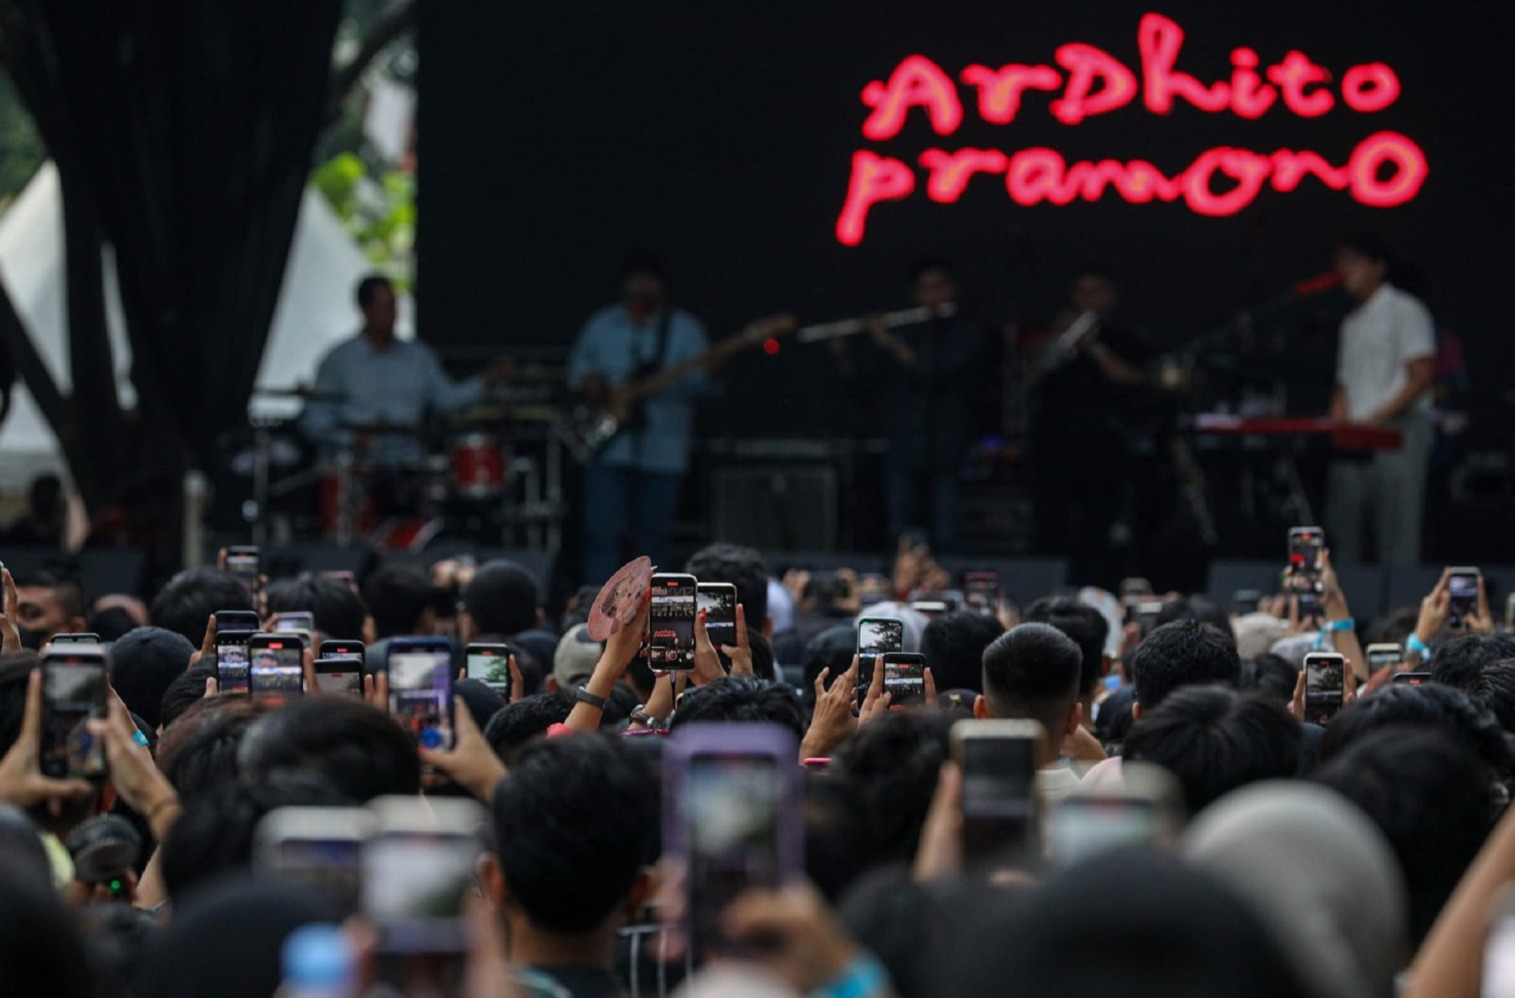 Penyanyi Ardhito Pramono tampil menghibur penonton di festival musik Soundsfest 2022 di Bekasi, Jawa Barat, Sabtu (5/11). (Hypeabis.id/Arief Hermawan P)